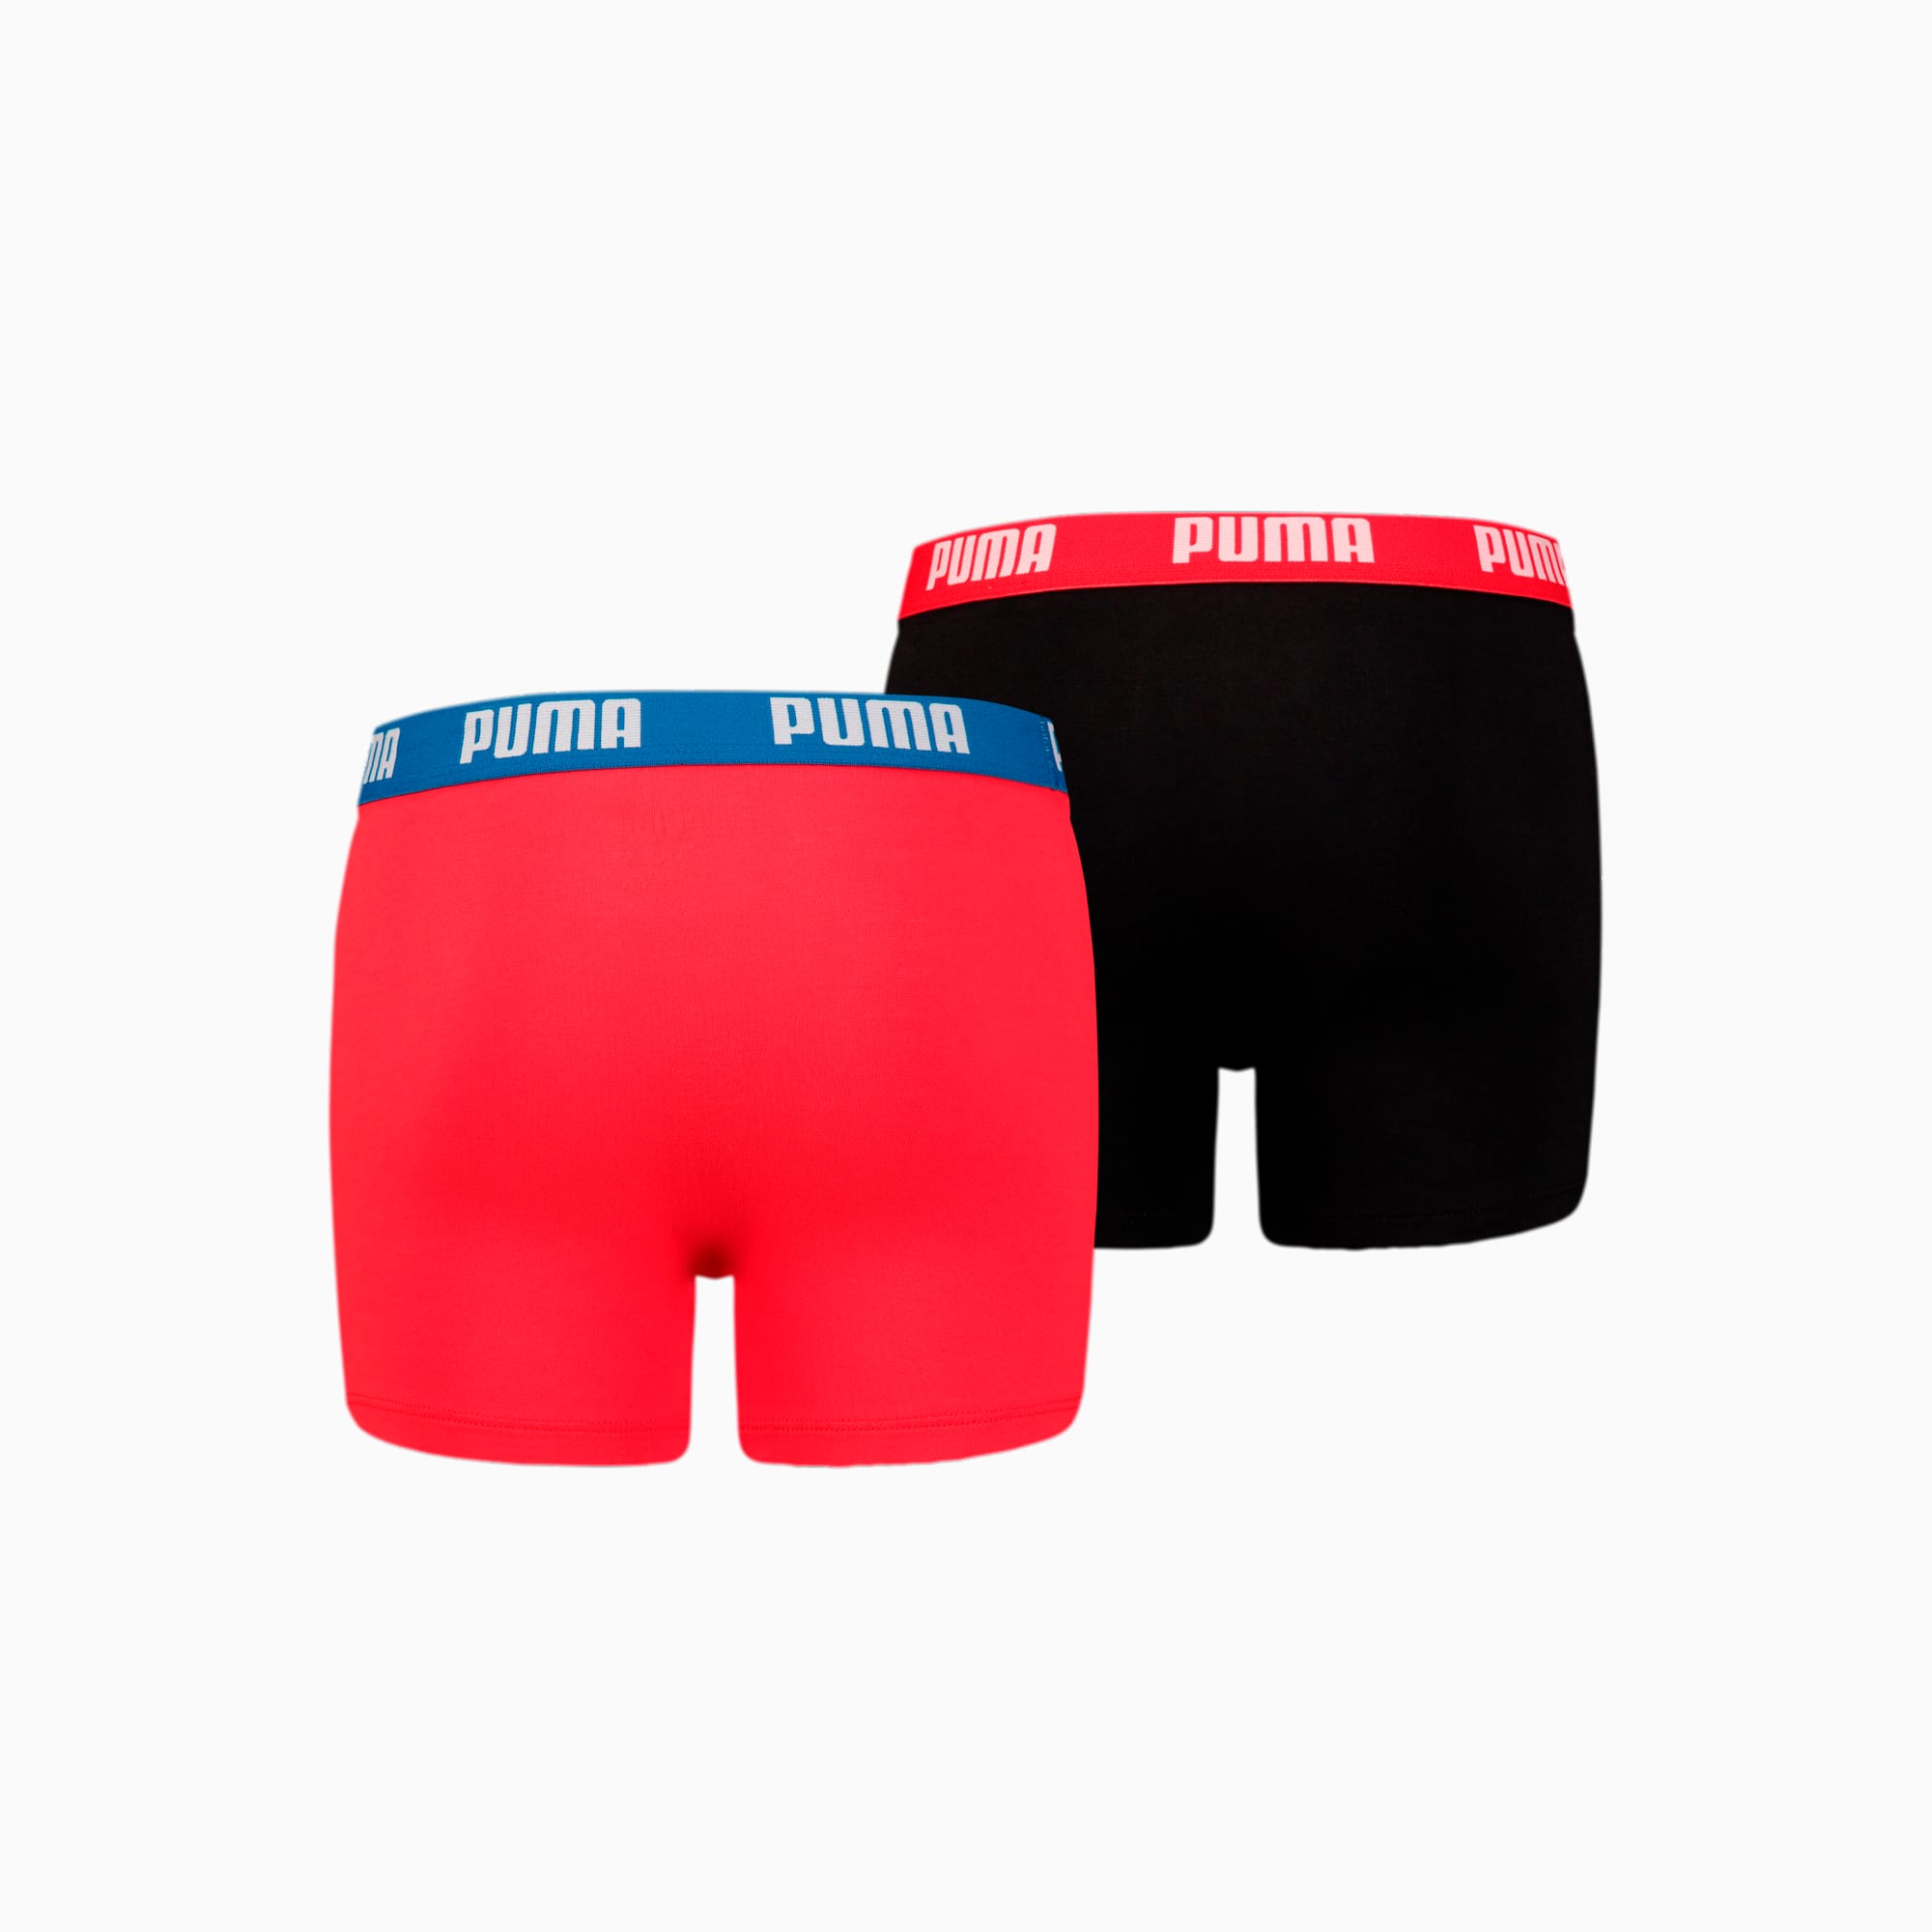 PUMA Jungen-Basic-Boxershorts 2er-Pack Für Kinder, Rot/Schwarz, Größe: 15/16, Kleidung